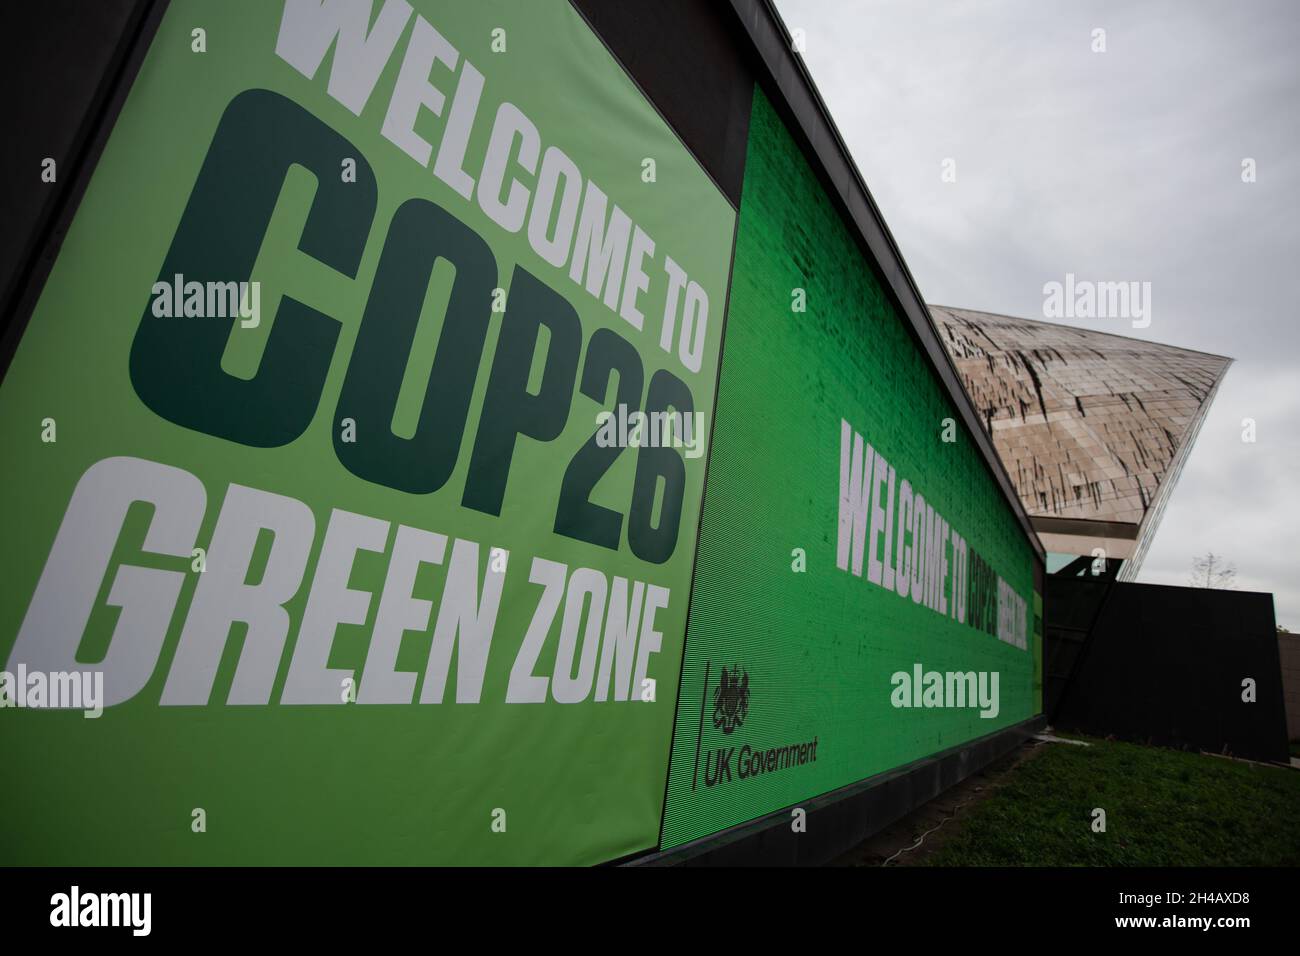 Glasgow, Royaume-Uni.Intérieur de la zone verte de la 26e Conférence des Nations Unies sur les changements climatiques, connue sous le nom de COP26, à Glasgow, au Royaume-Uni, le 1er novembre 2021.Photo: Jeremy Sutton-Hibbert/Alamy Live News. Banque D'Images